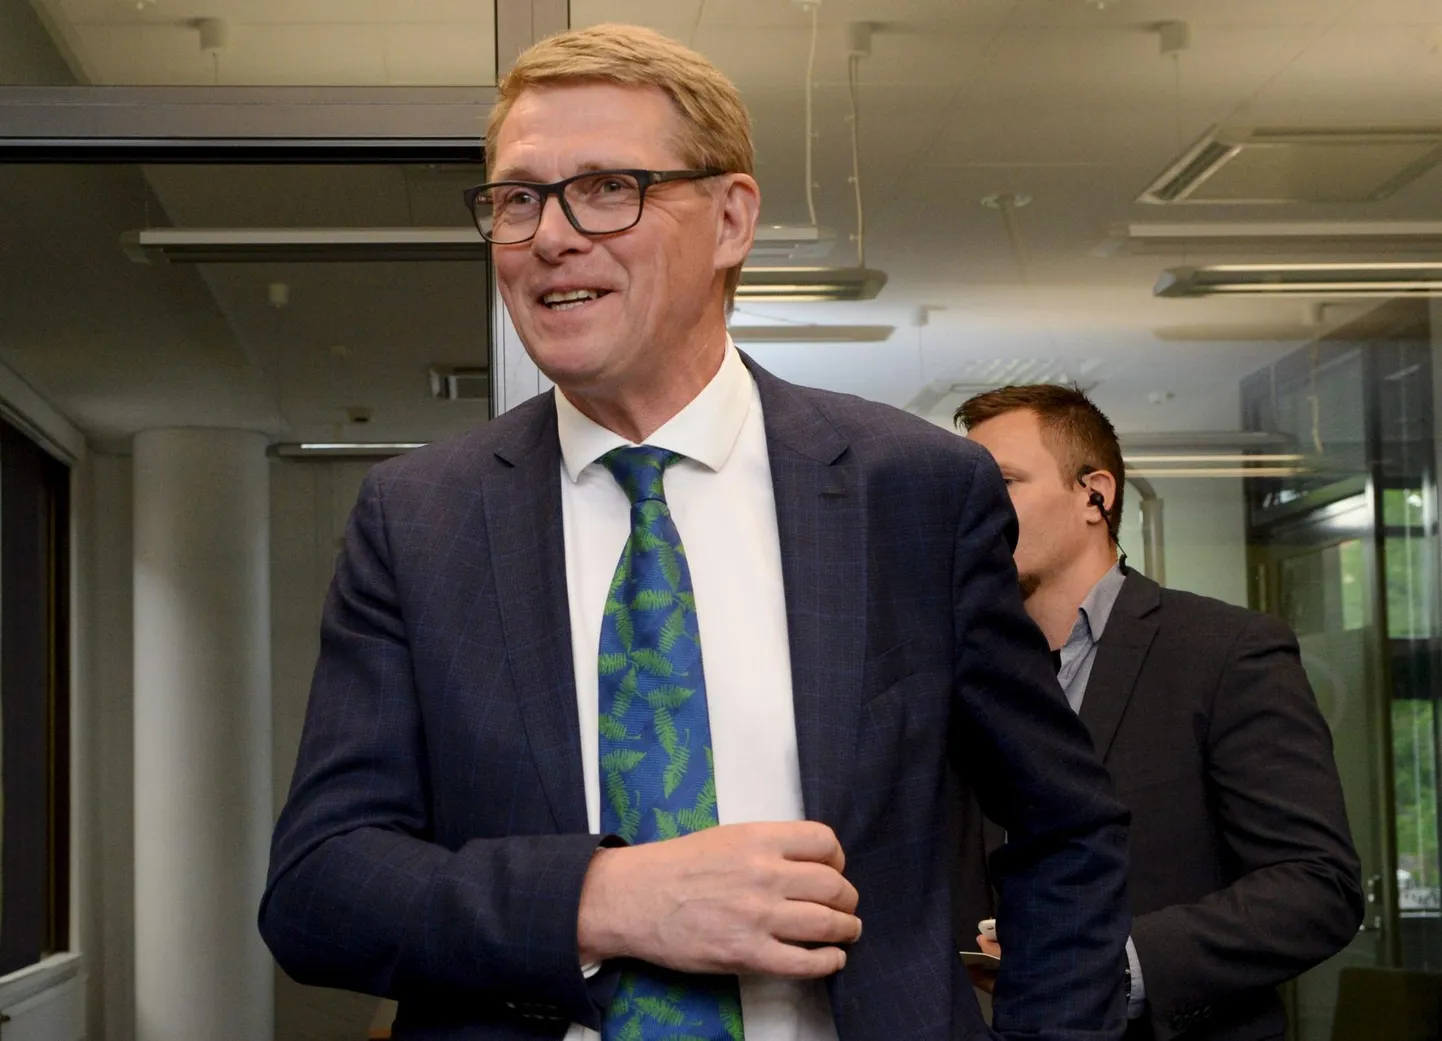 Sel nädalal sai kogenud poliitikust Matti Vanhanenist taas valitsuse liige, kui ta võttis enda kanda rahandusministri kohustused.